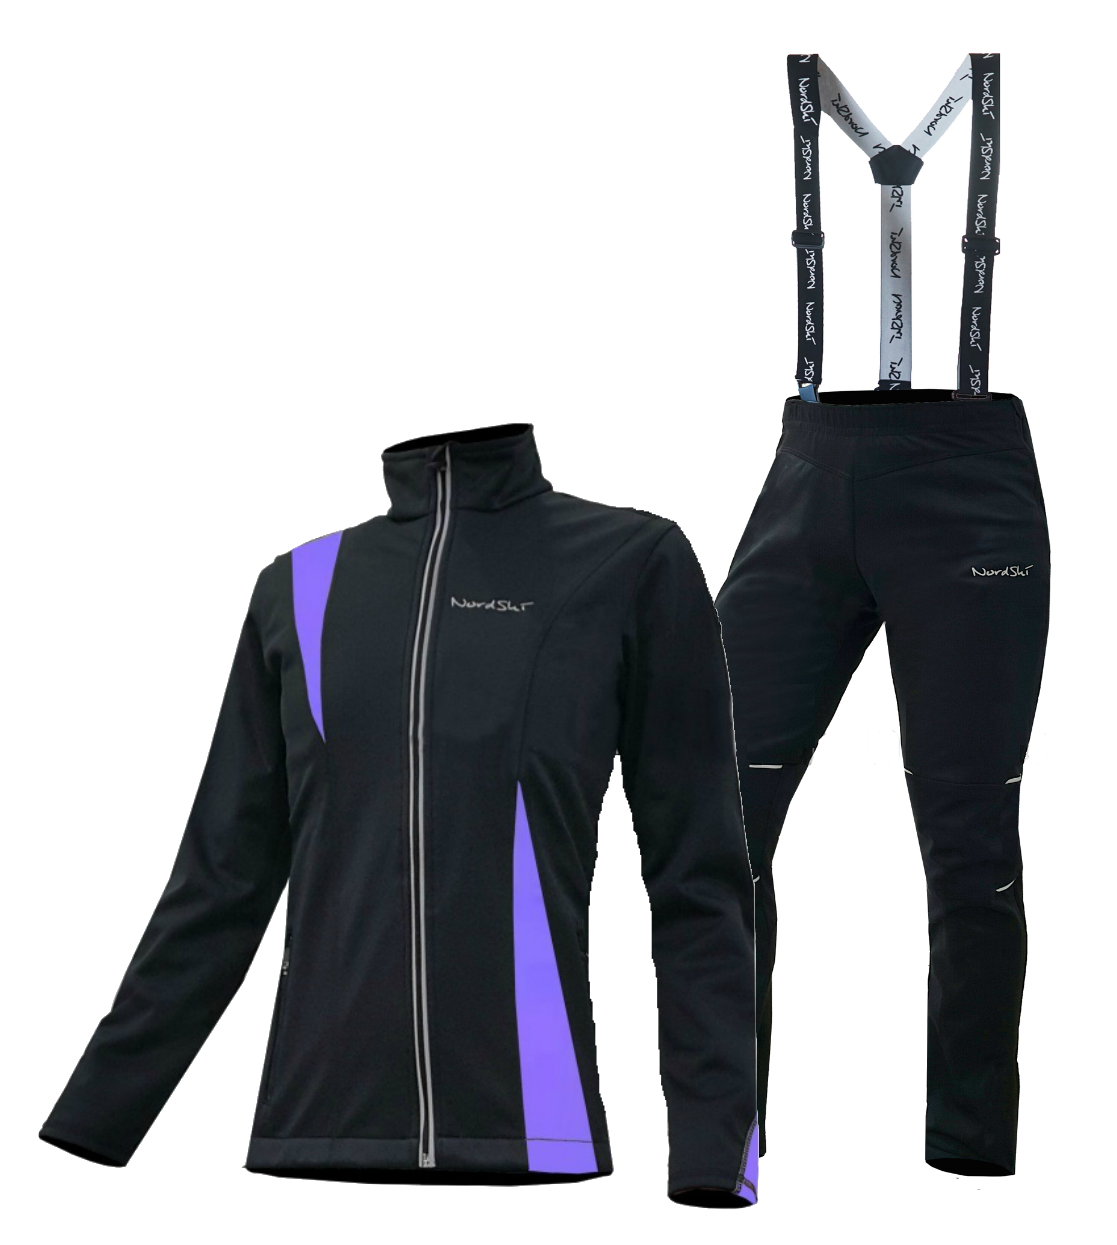 Разминочный костюм лыжи. Nordski Premium Active разминочный лыжный костюм женский Black-Violet. Разминочный костюм Craft для беговых лыж женский. Разминочный костюм женский адидас. Разминочный костюм для лыжников Nordski Premium.